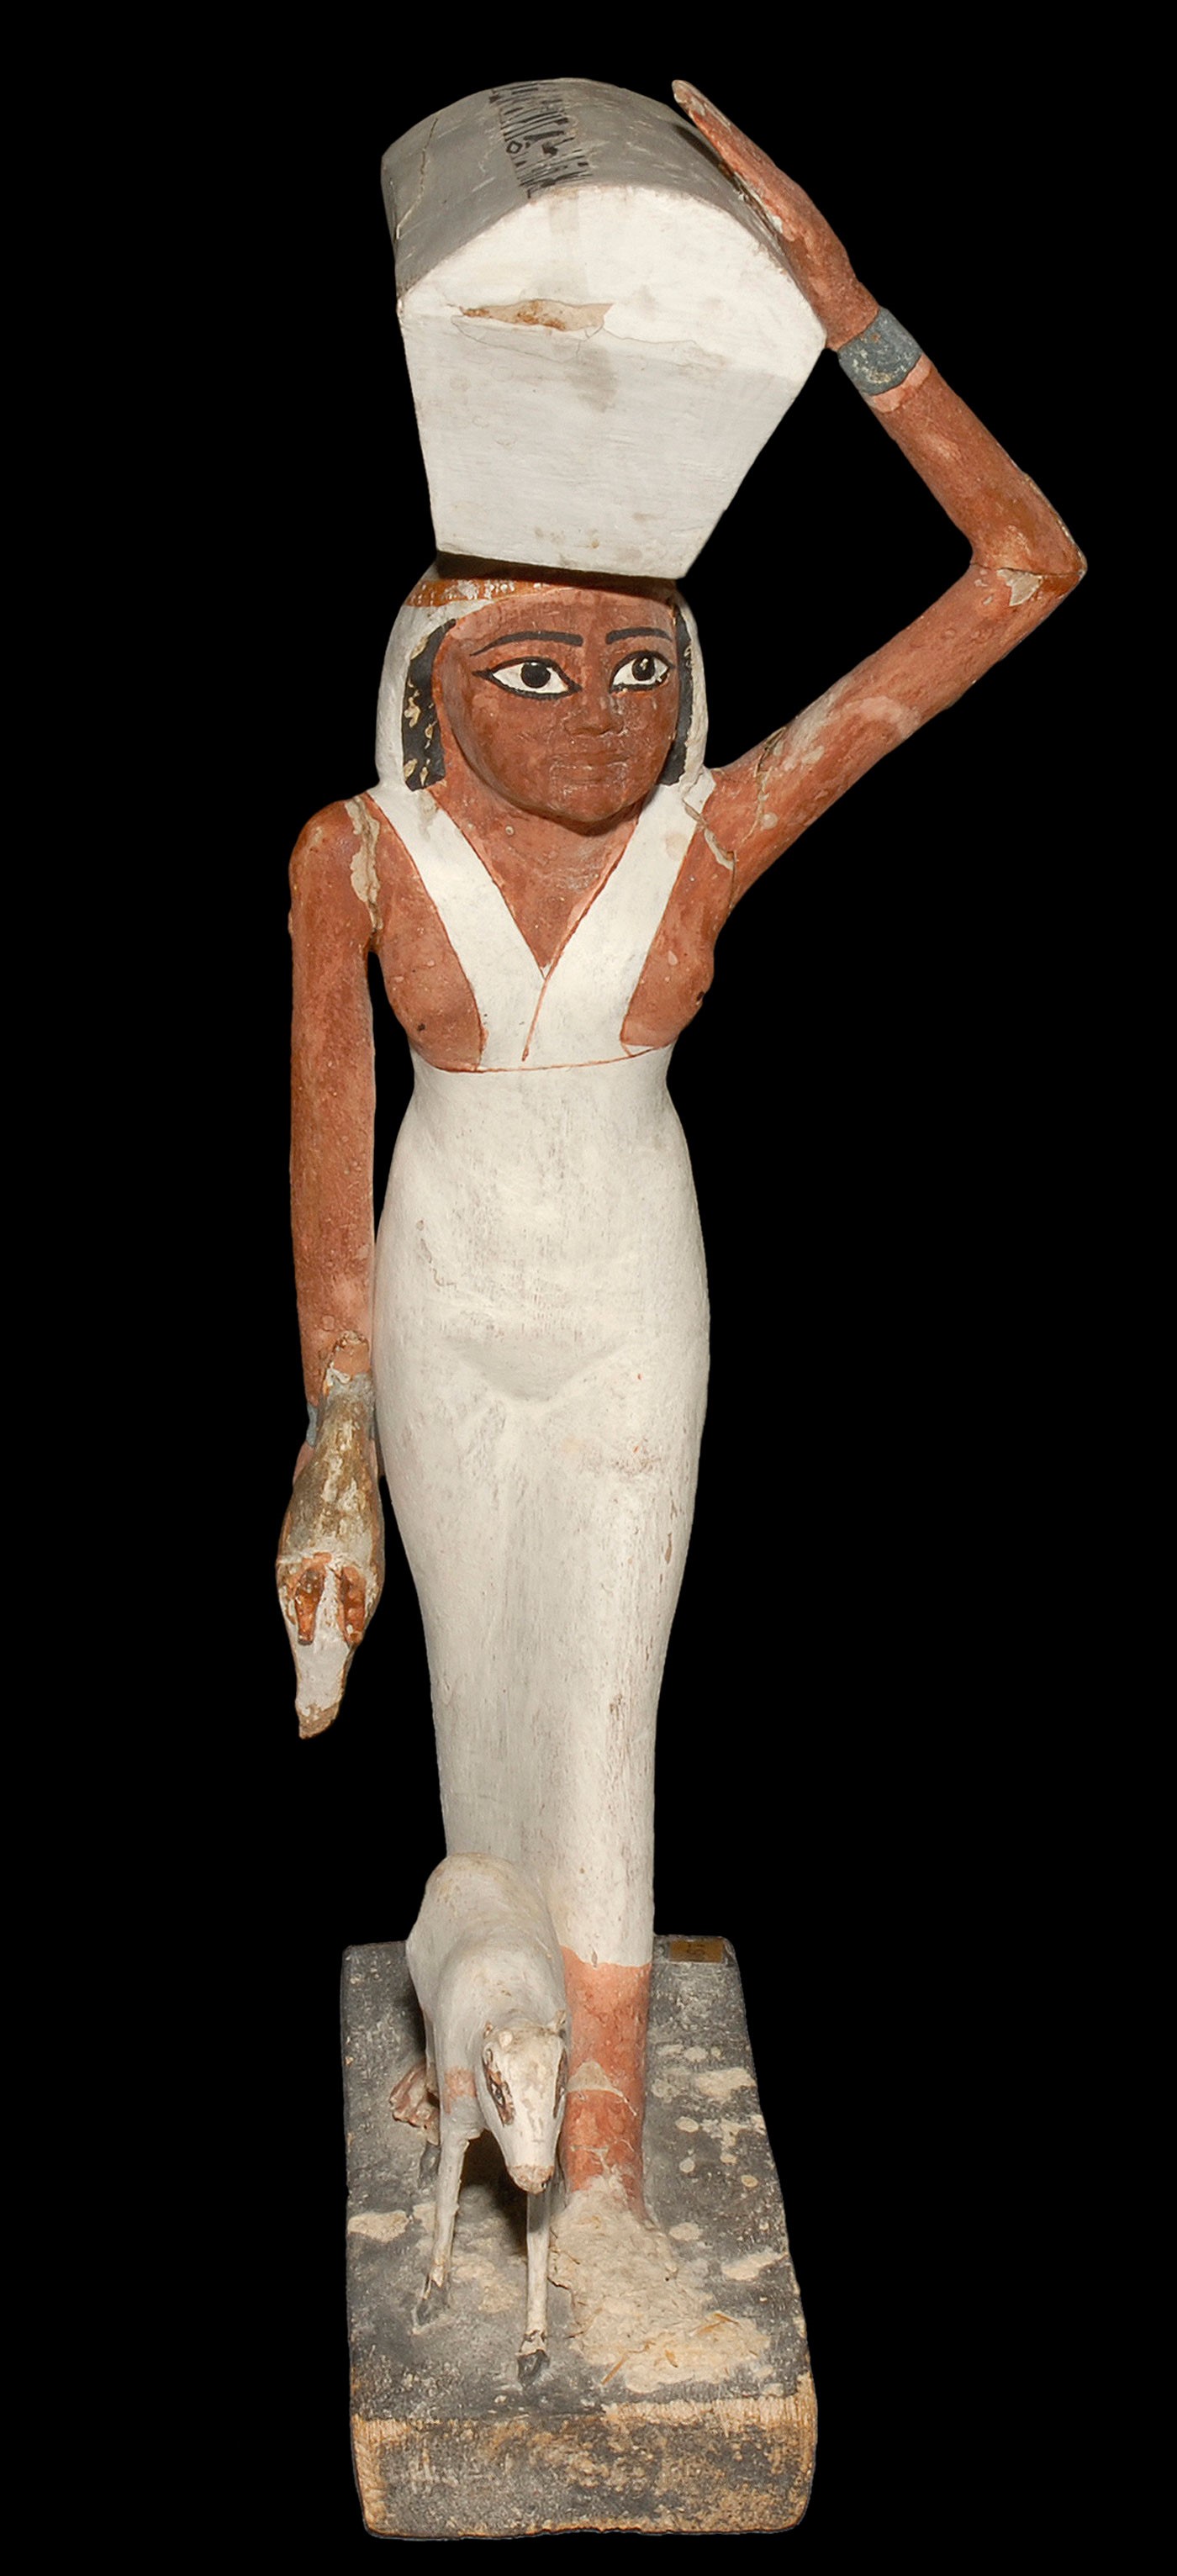 Ancient egypt kalasiris